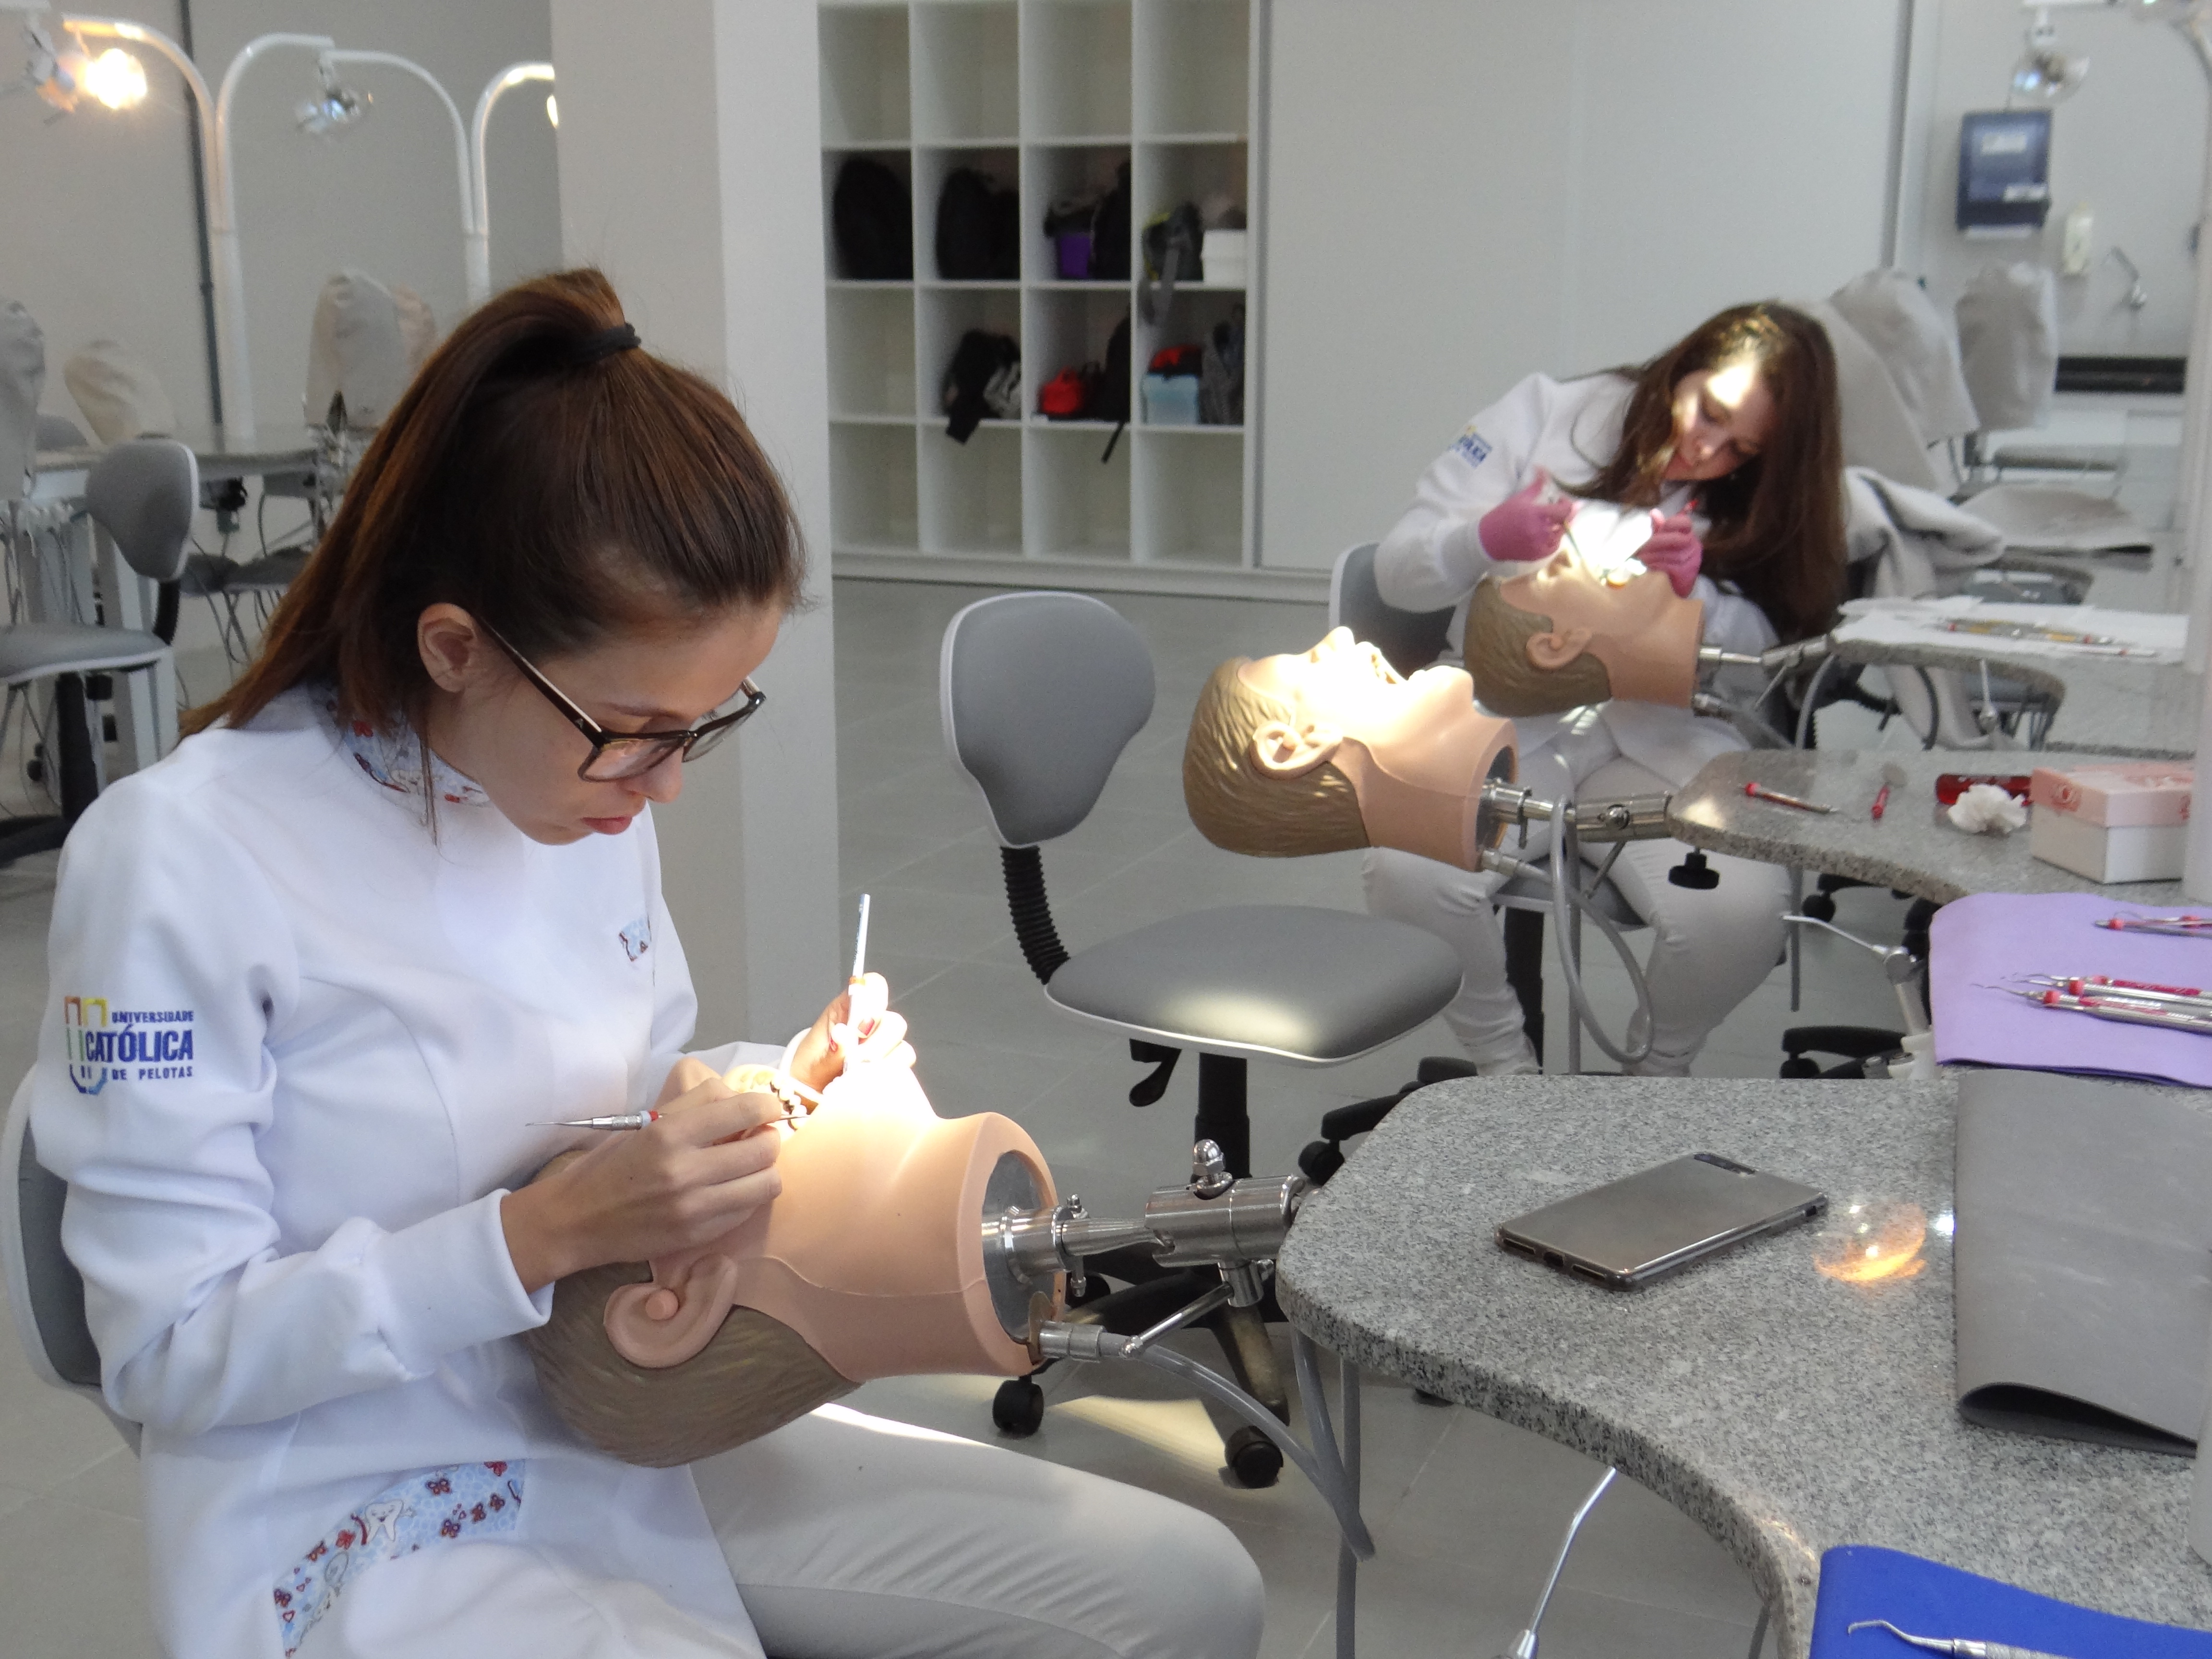 Alunas de odontologia praticam em simulador de procedimentos odontológicos em laboratório da UCPel.